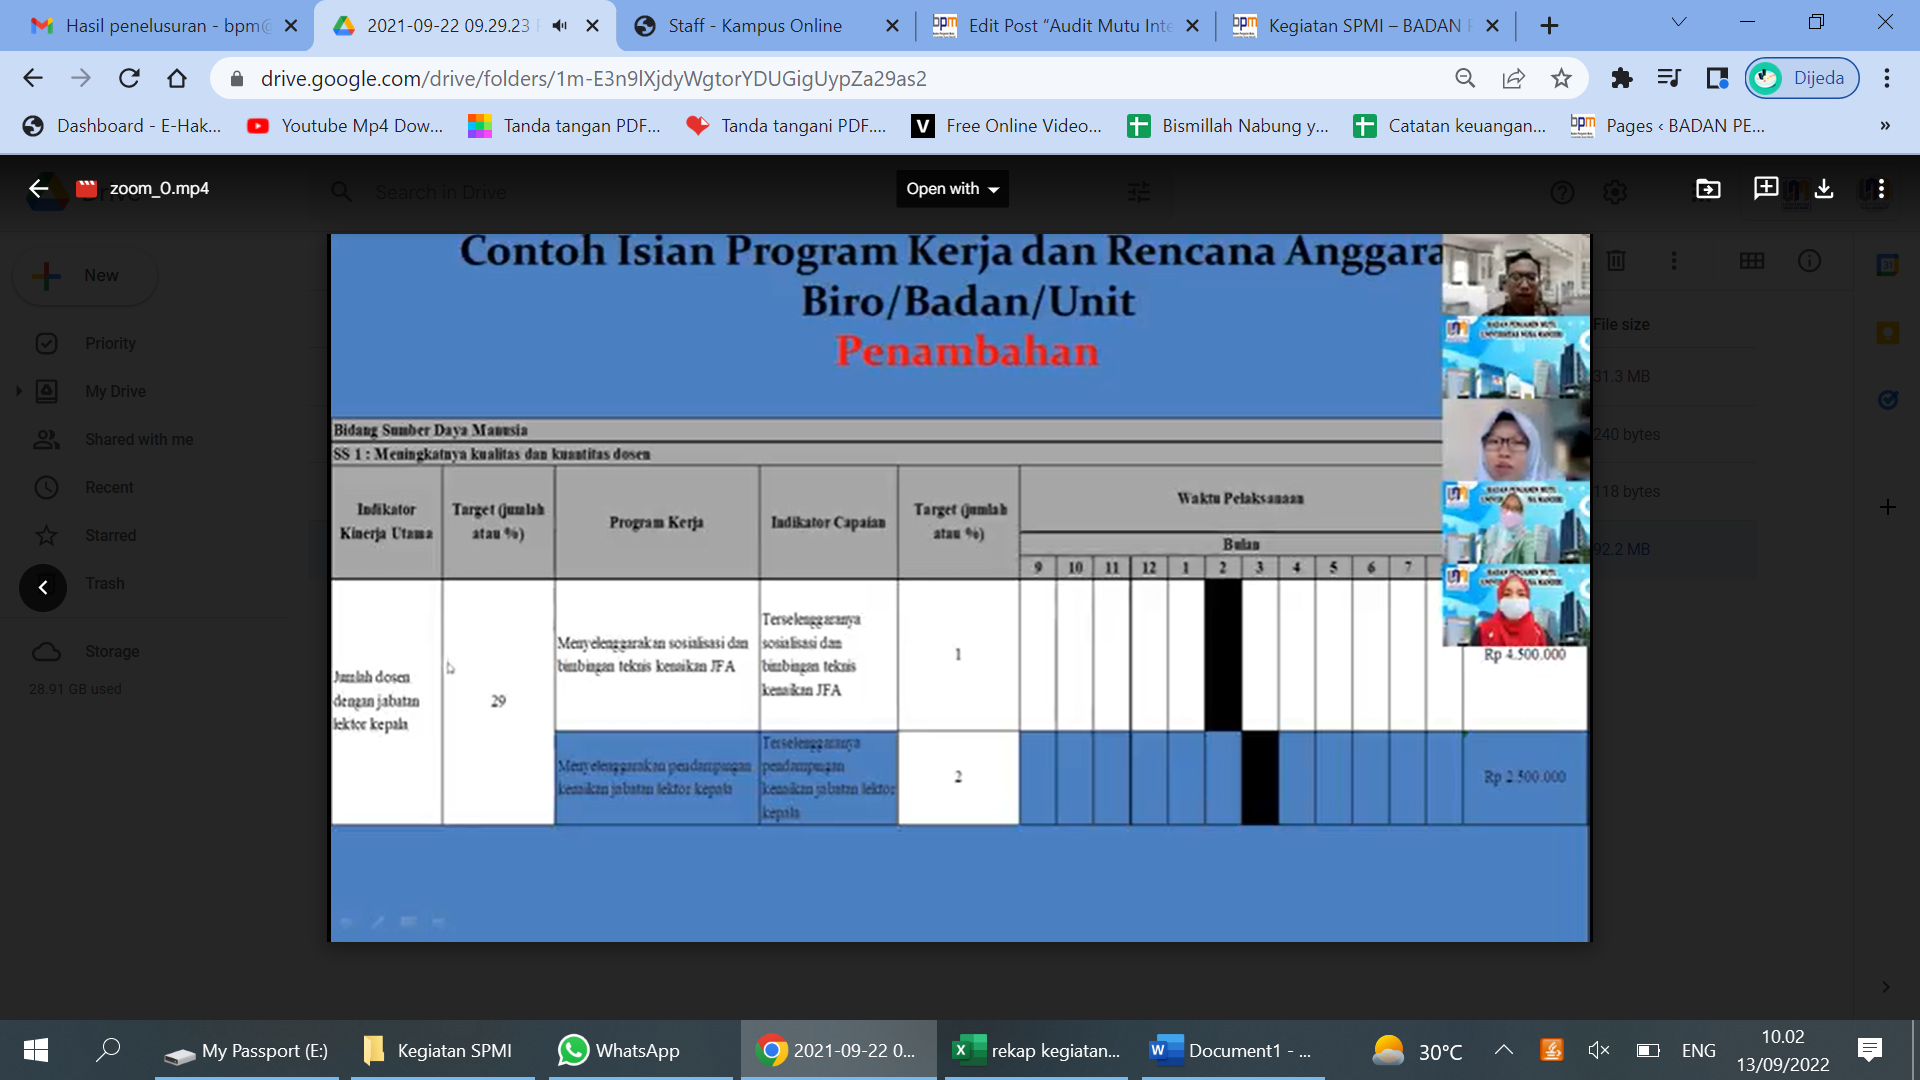 Pendampingan Penyusunan Program Kerja di Lingkungan Universitas Nusa Mandiri